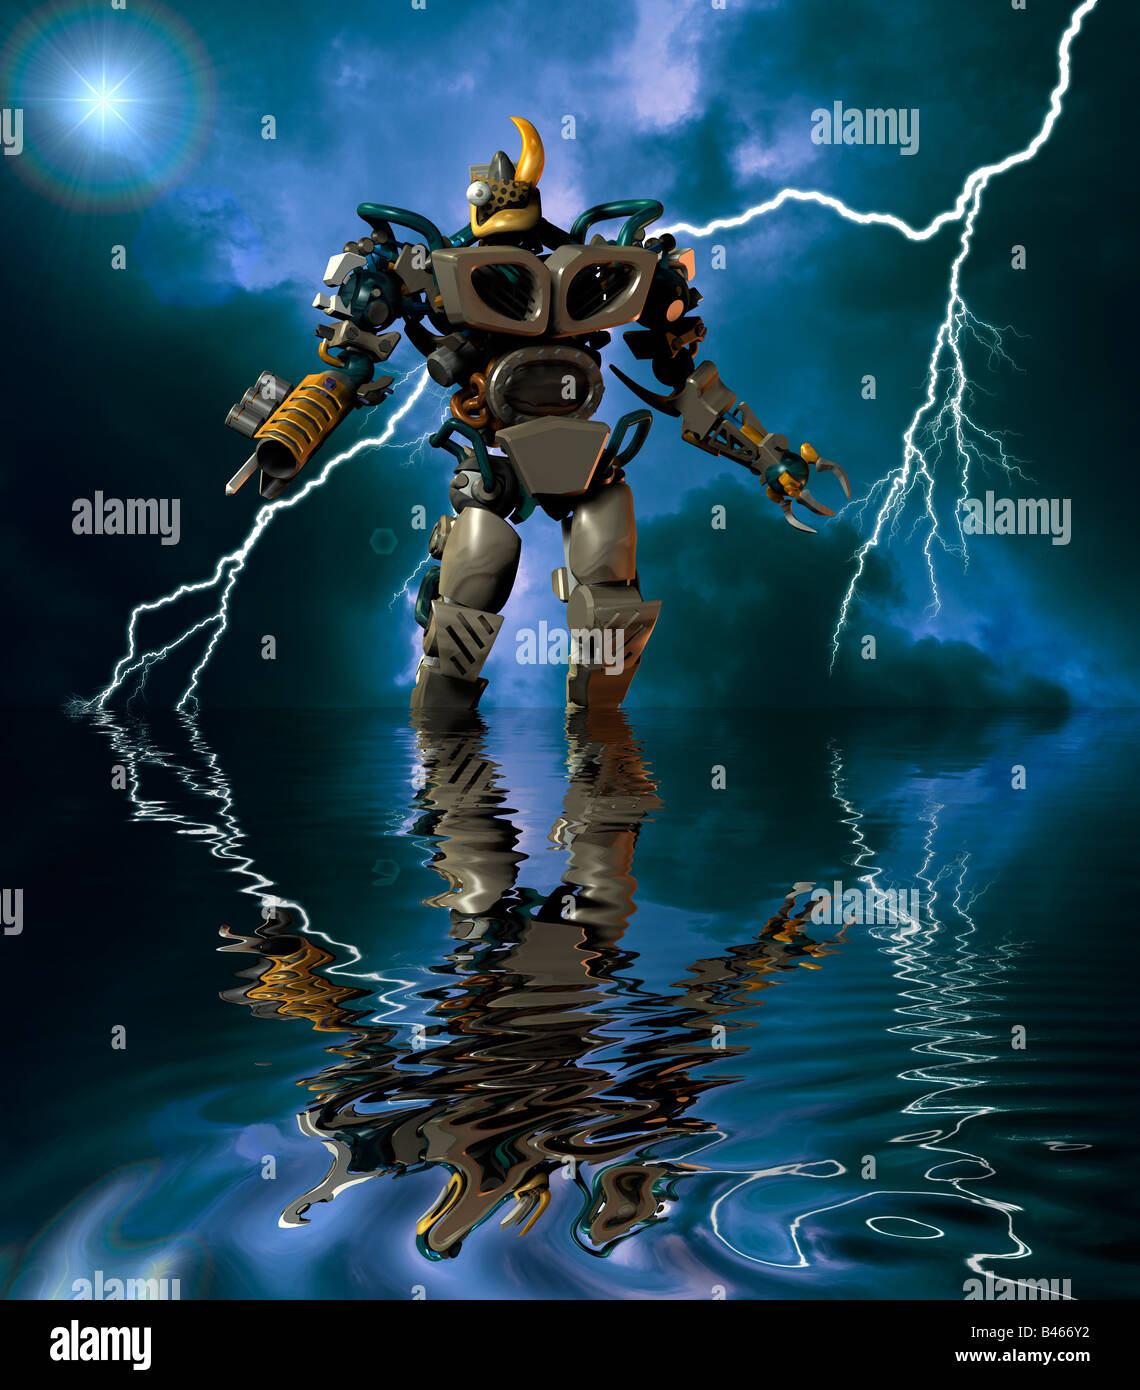 leistungsfähige 3D Computer generierte Roboter Cyborg alien waten im See  bei Gewitter Stockfotografie - Alamy